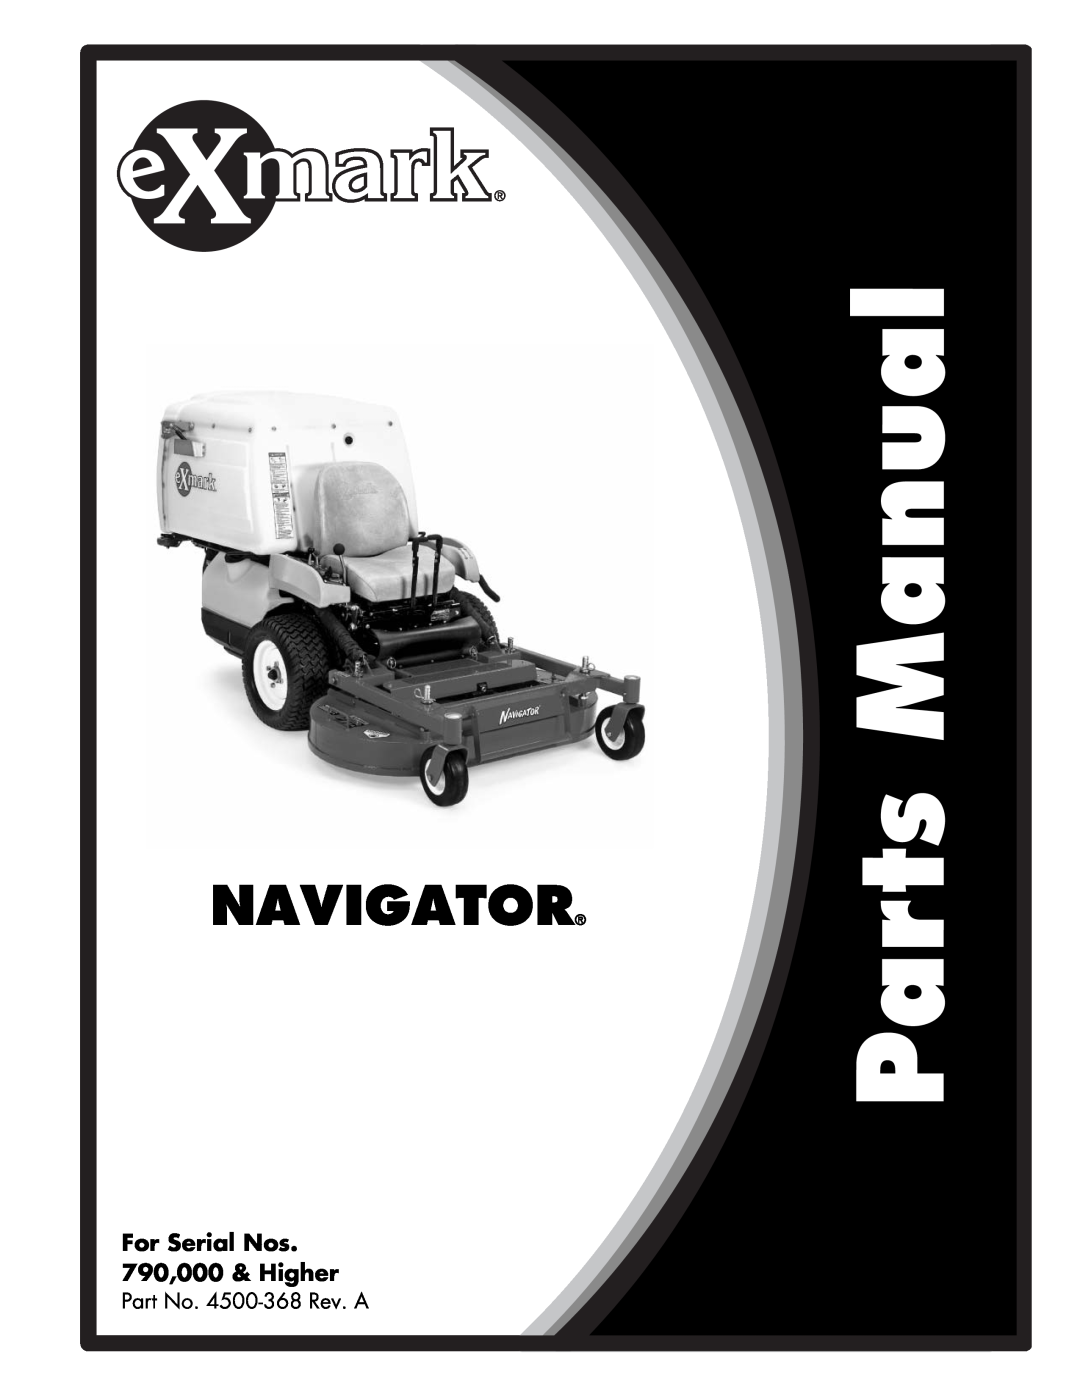 Exmark manual Navigator, For Serial Nos 790,000 & Higher, Part No. 4500-368Rev. A 